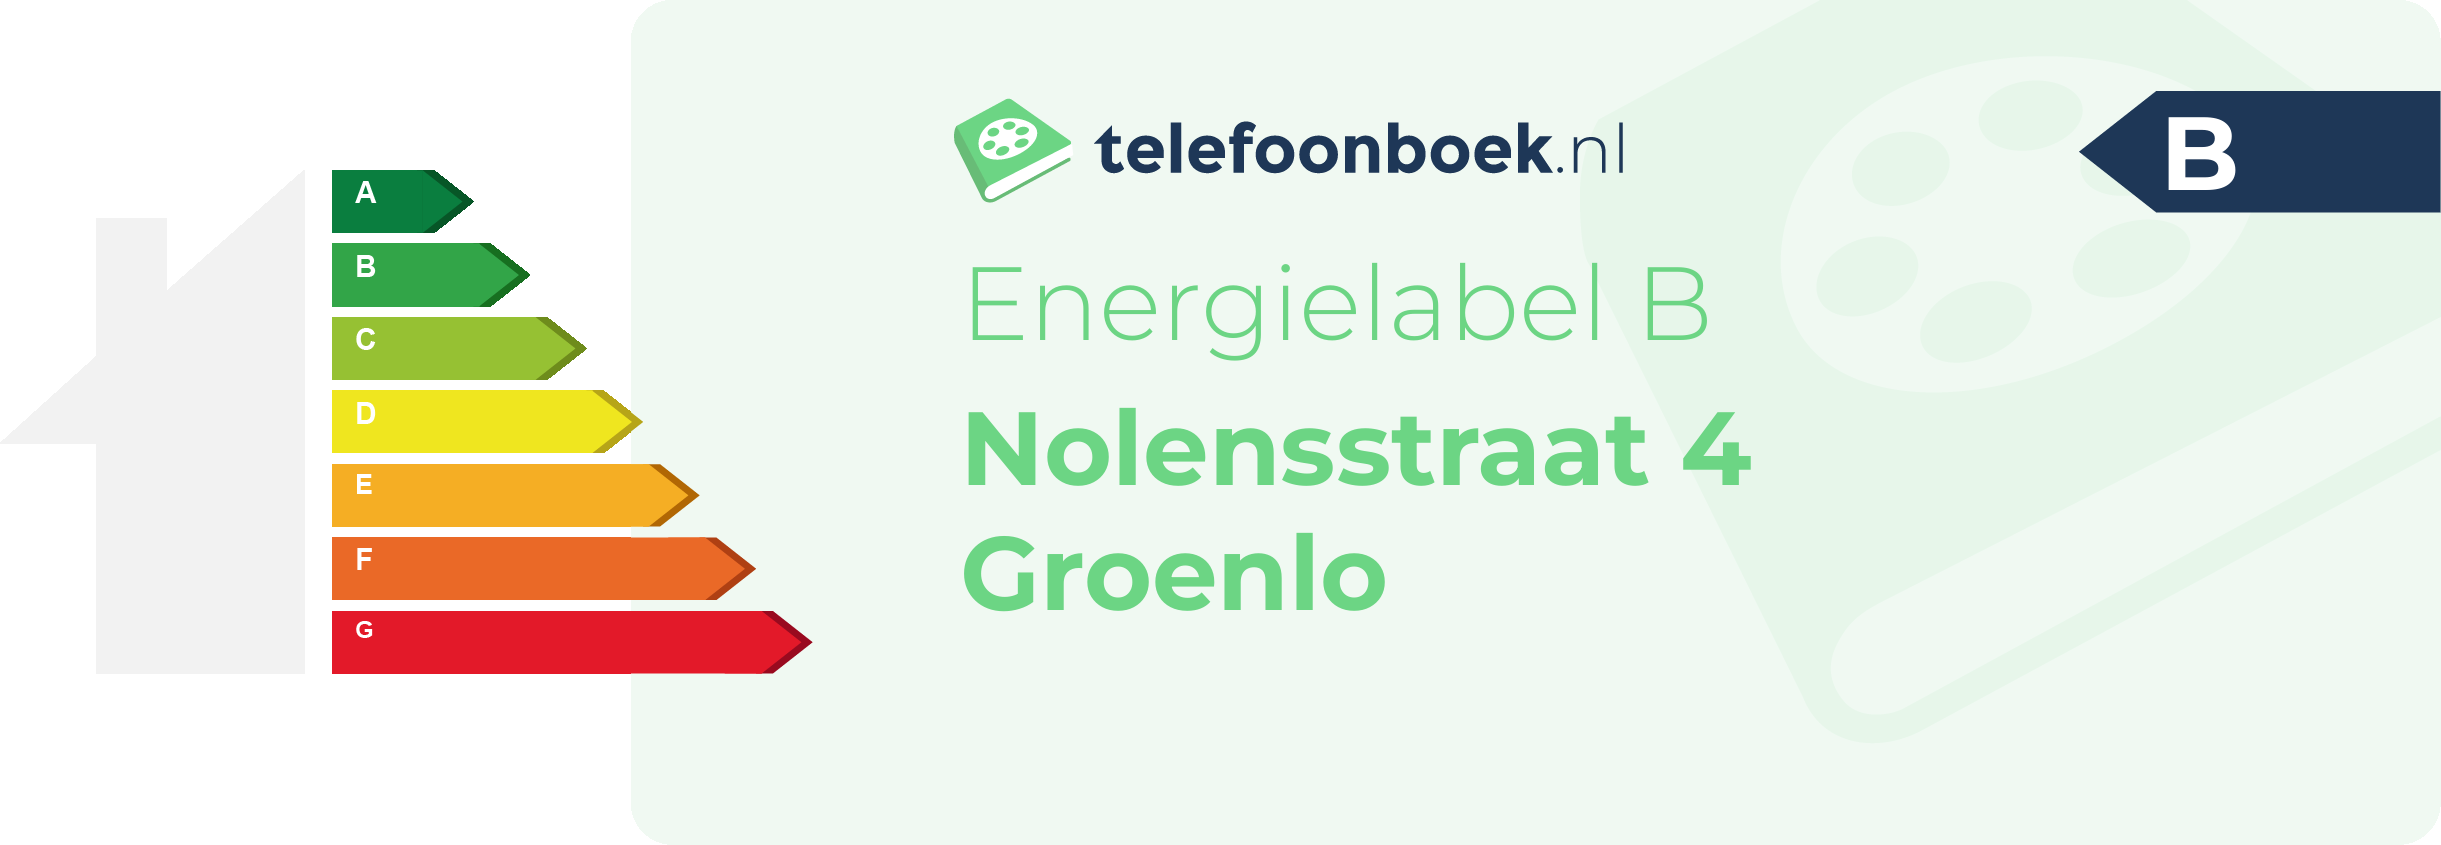 Energielabel Nolensstraat 4 Groenlo